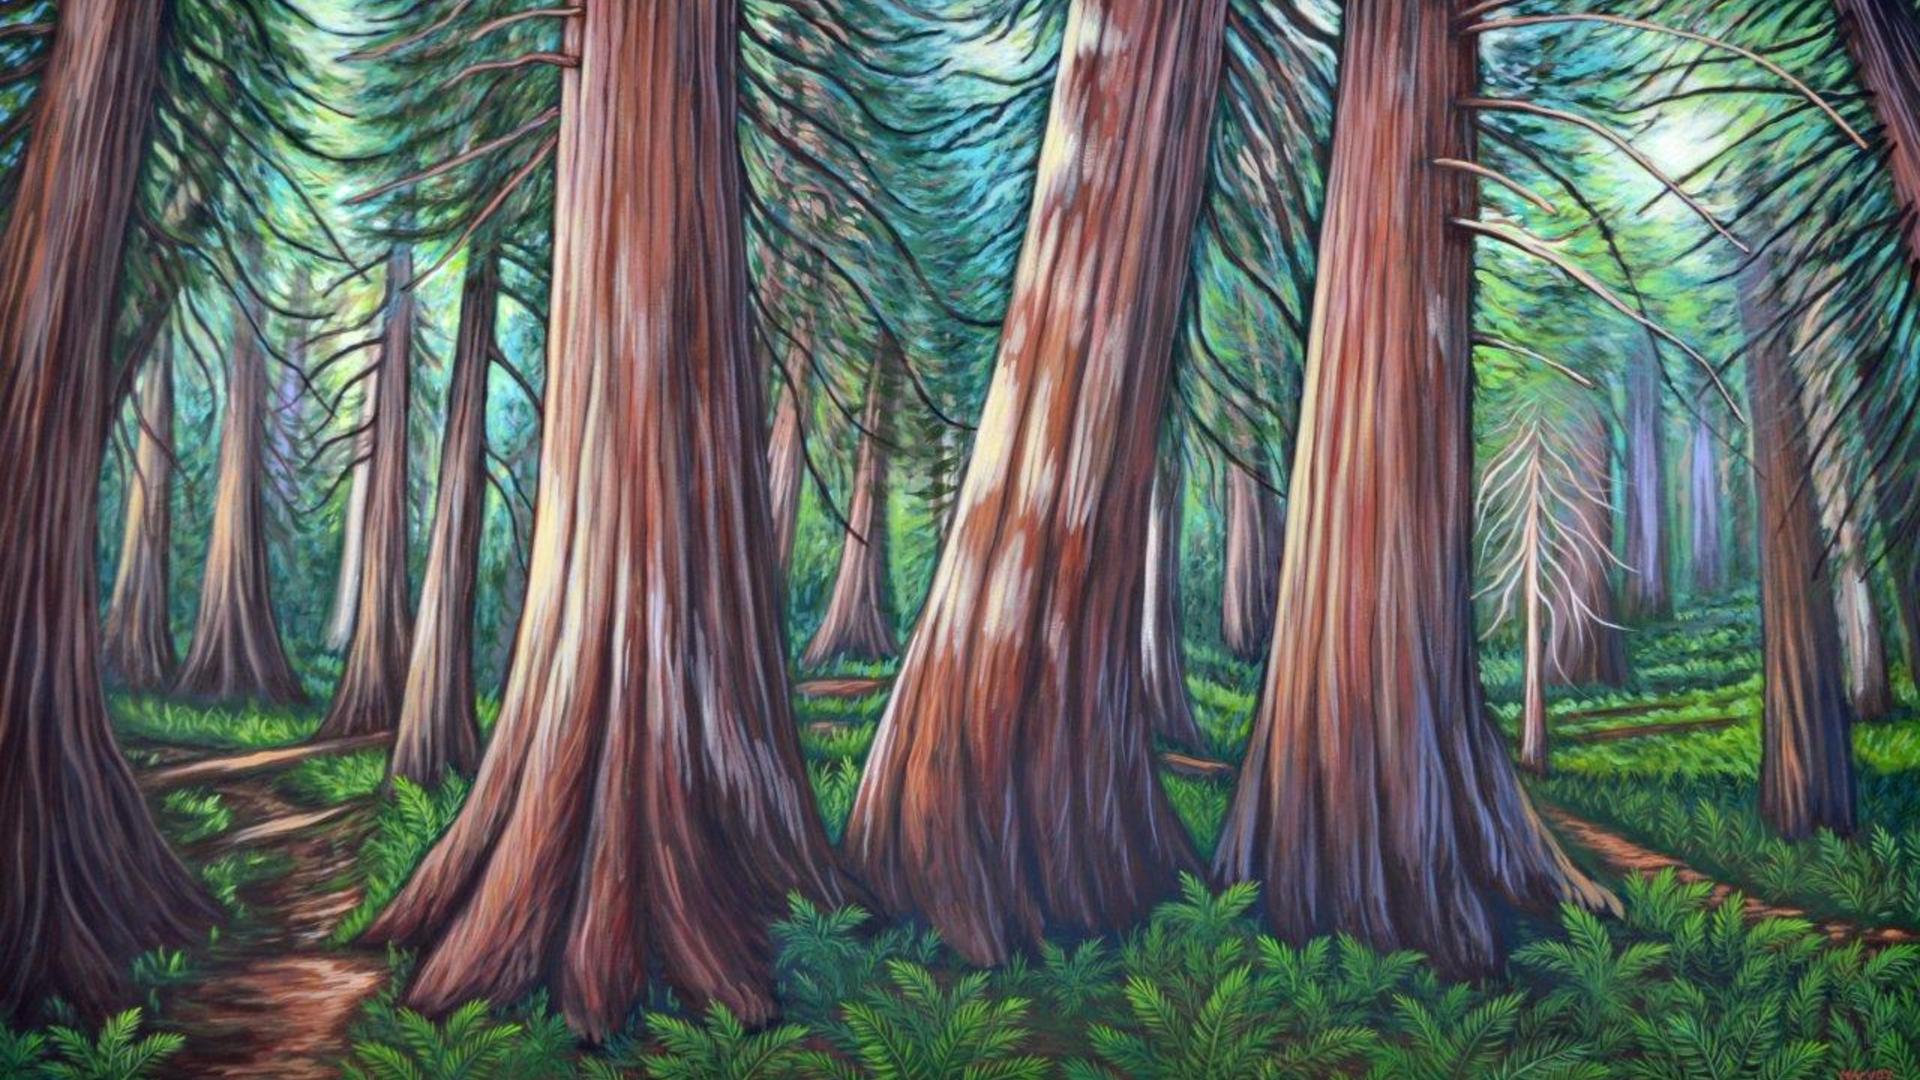 Melanie painting of trees